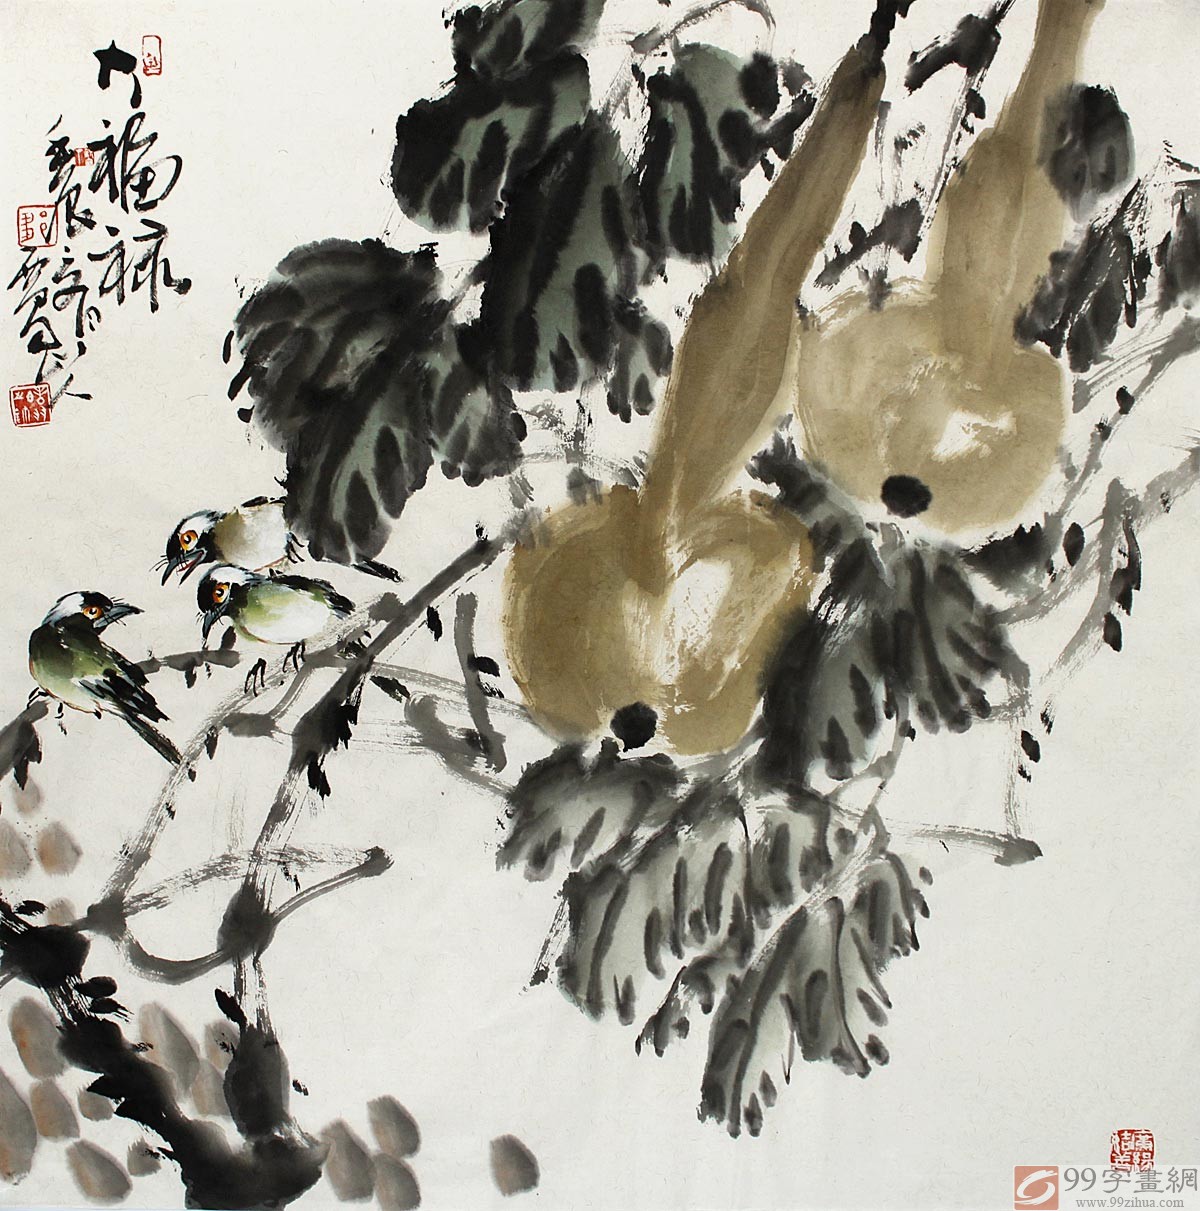 中国写意花鸟葫芦画 - 葫芦画 - 99字画网